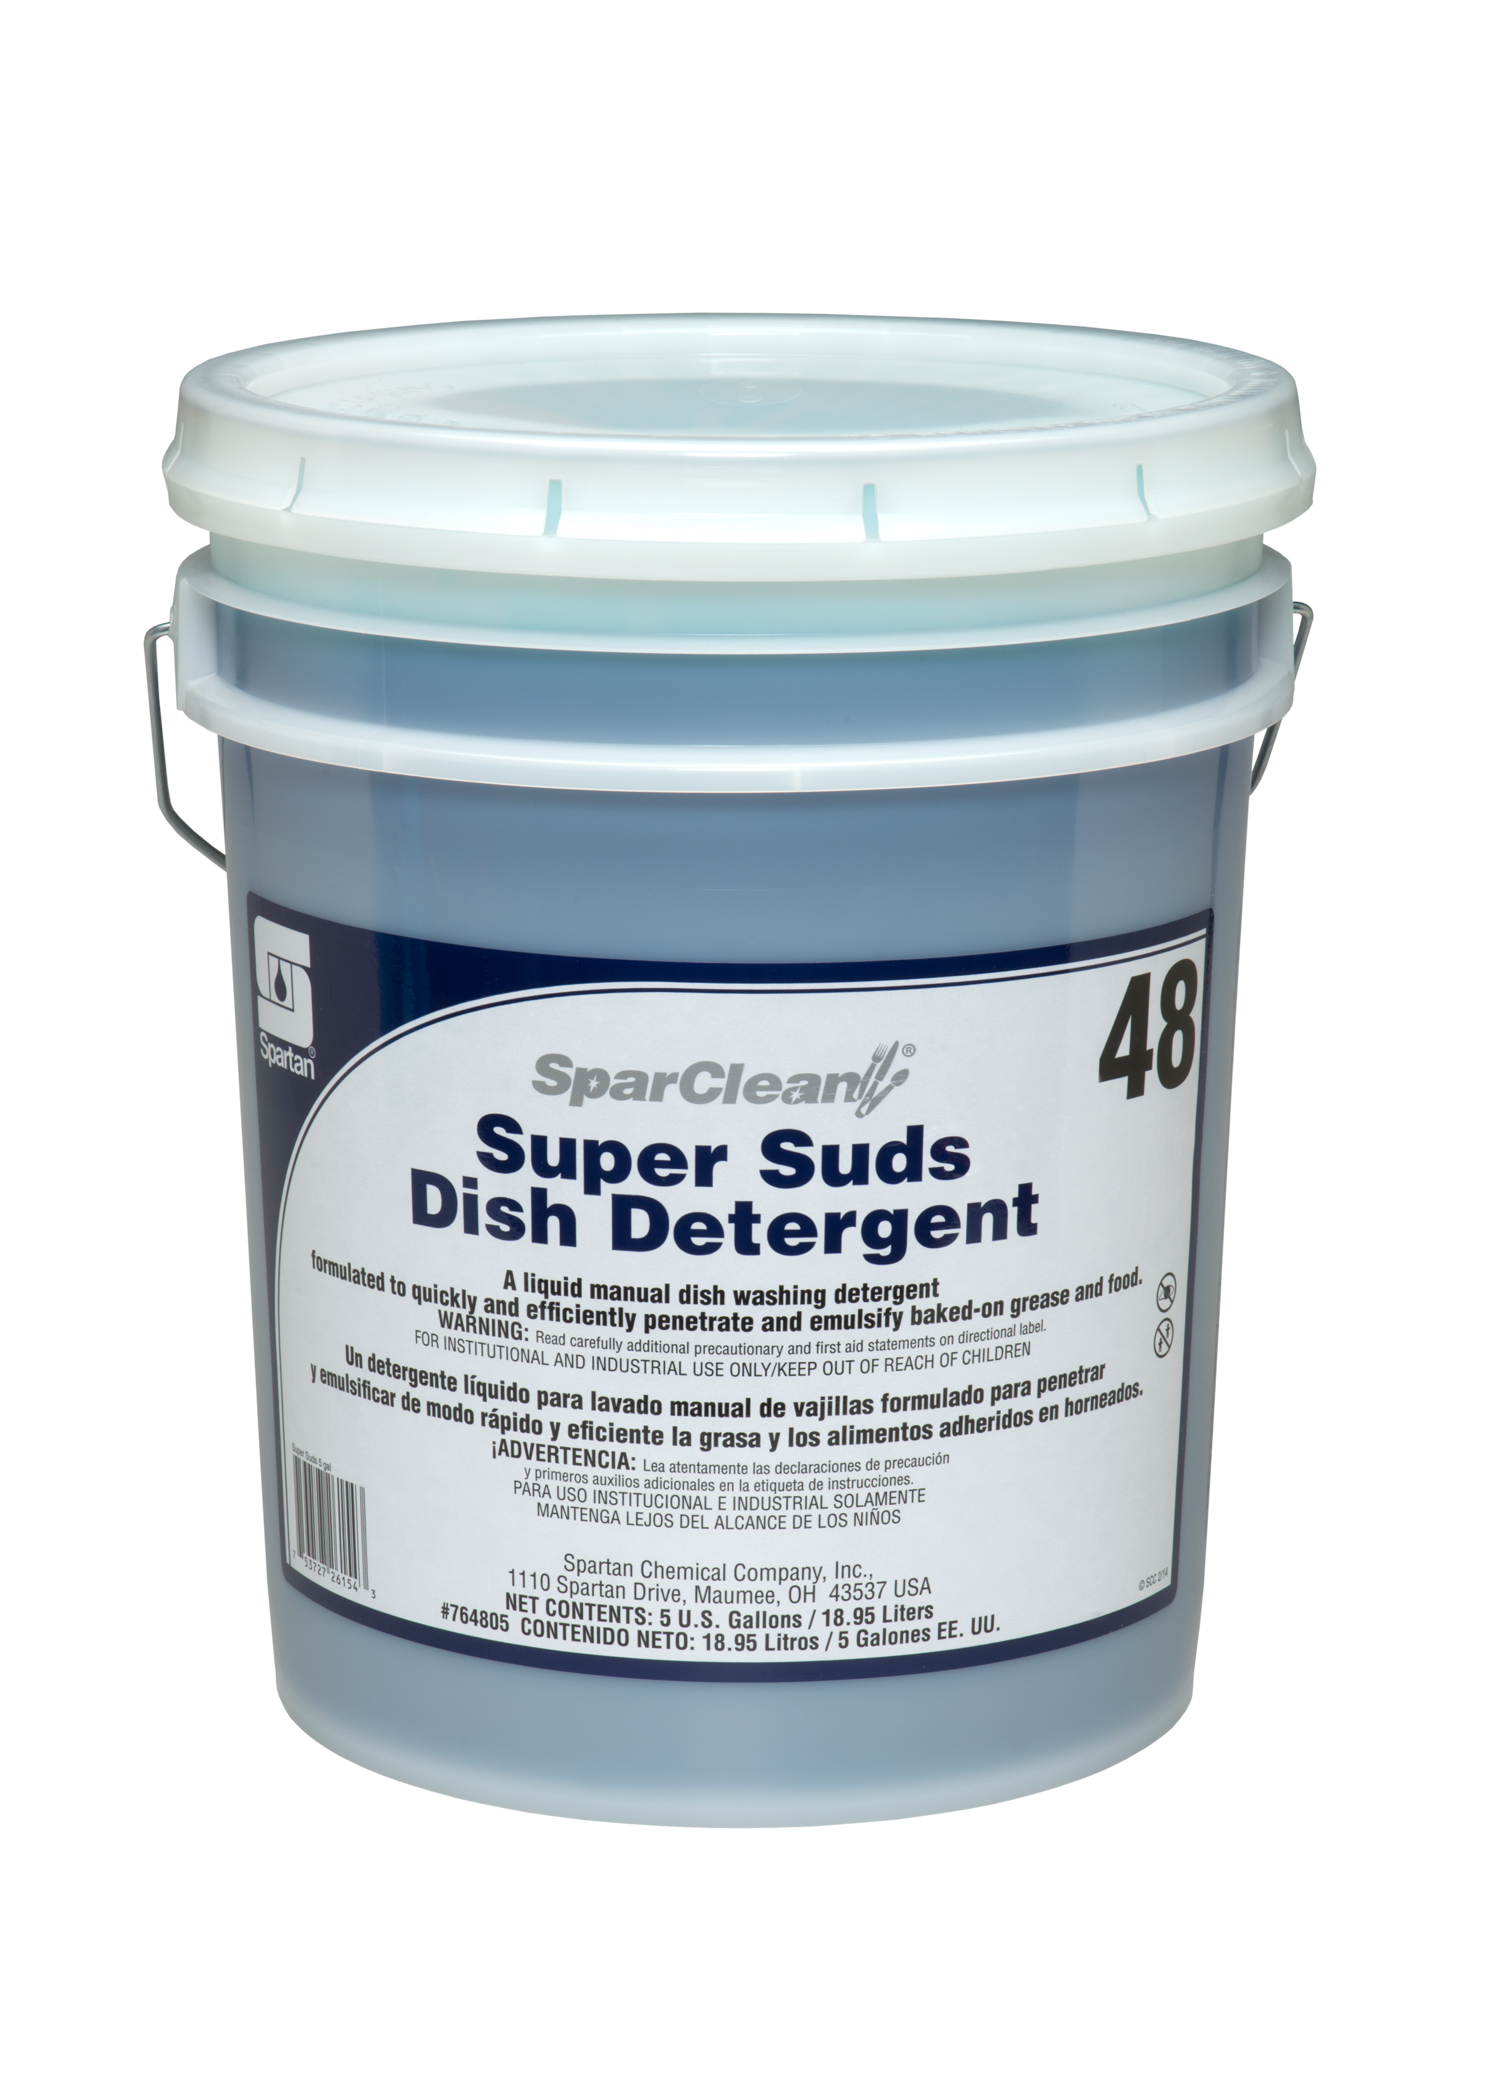 SPARCLEAN SUPER SUDS 48 HAND DISH WASH DETERGENT, 5 GALLON